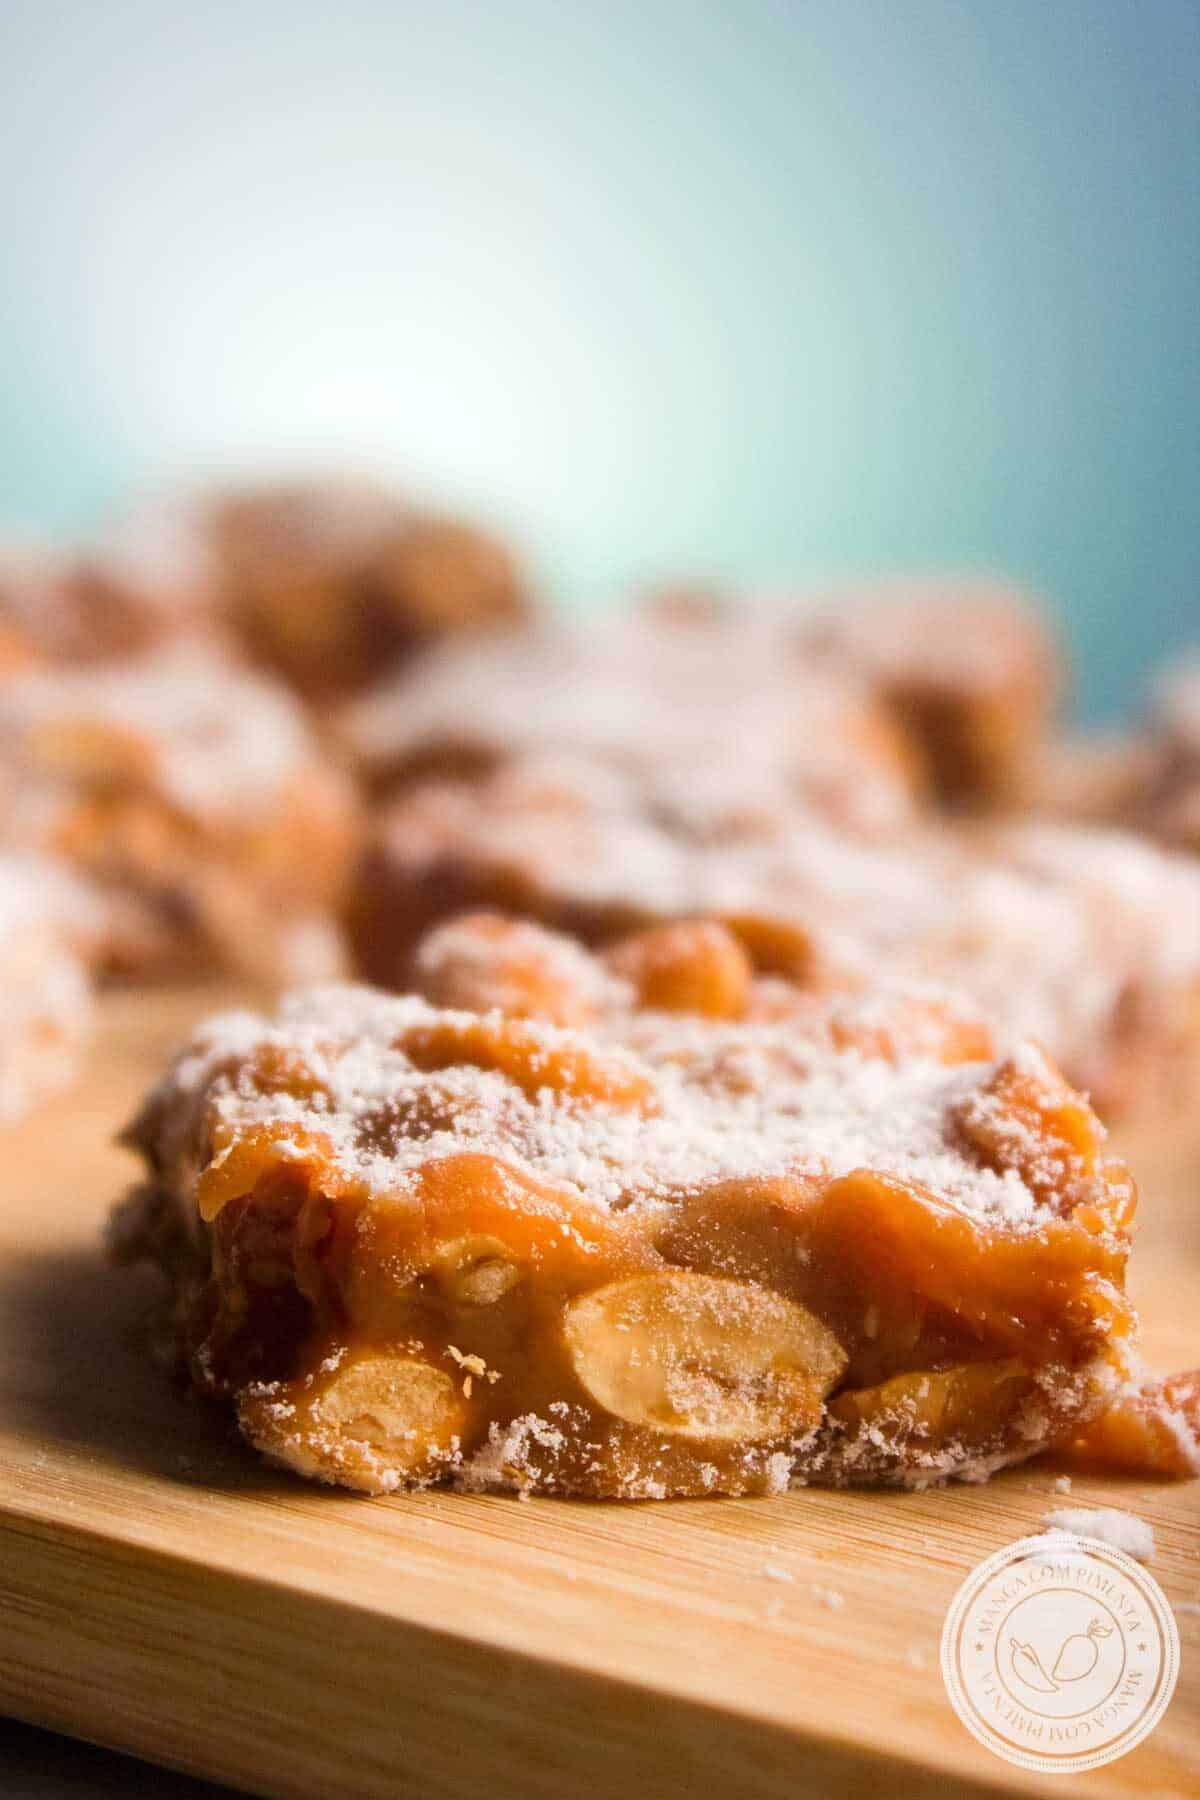 Receita de Pé de Moça - um doce de amendoim macio, uma sensação deliciosa a cada mordida.